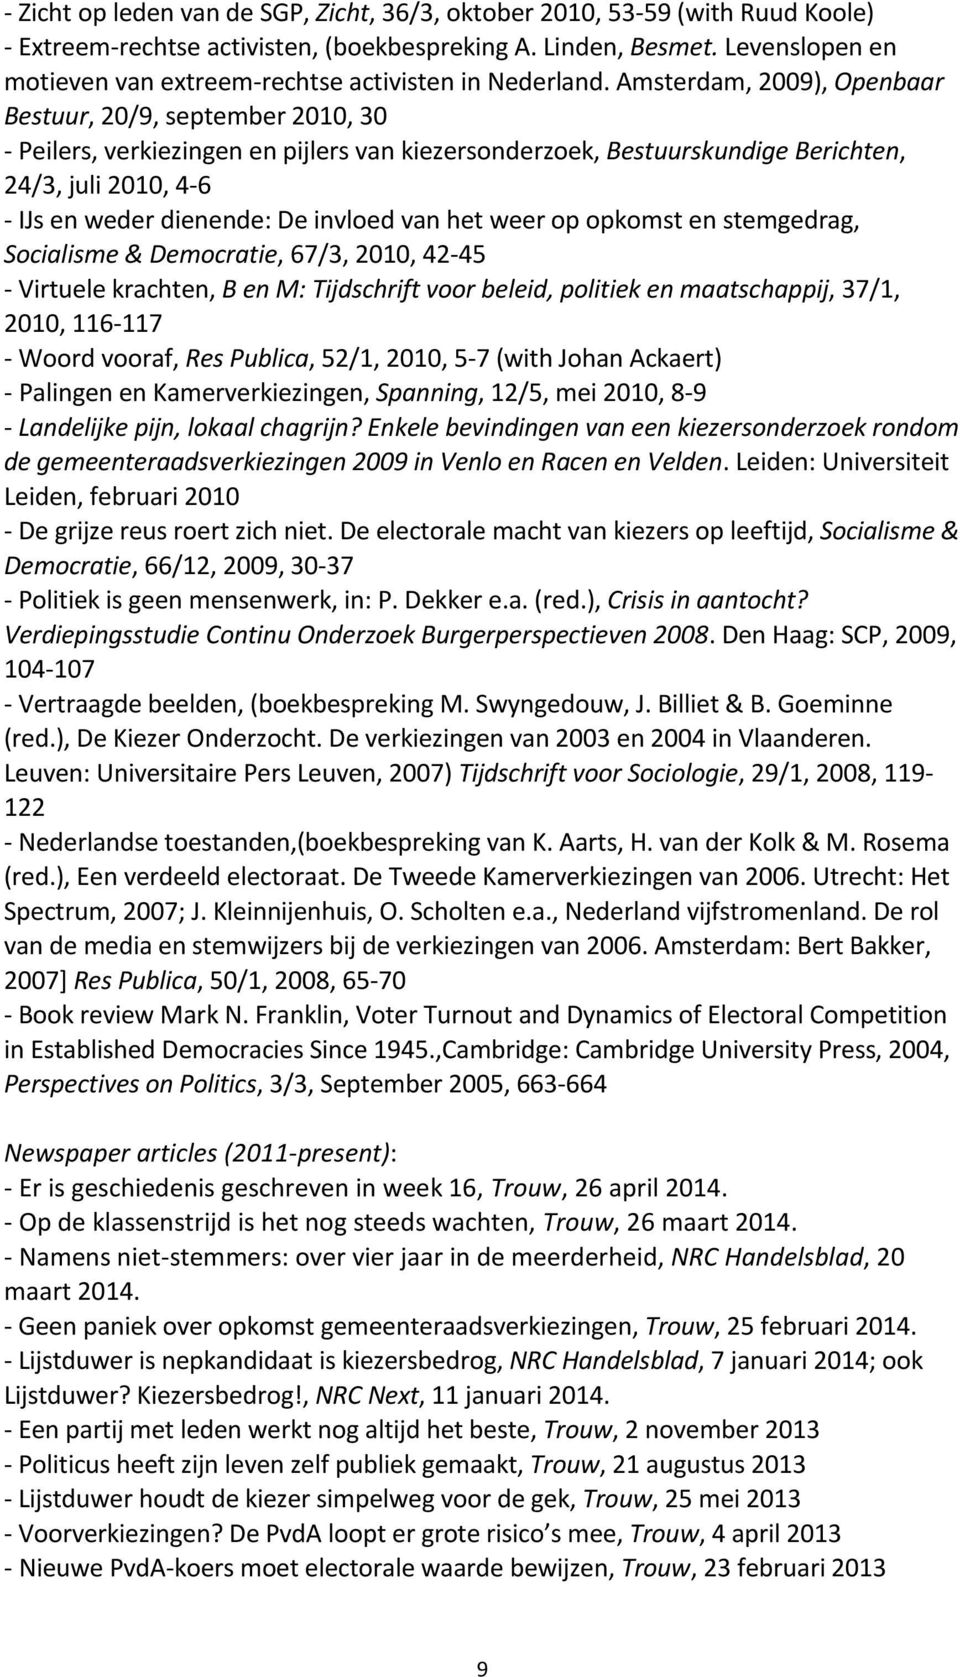 Amsterdam, 2009), Openbaar Bestuur, 20/9, september 2010, 30 - Peilers, verkiezingen en pijlers van kiezersonderzoek, Bestuurskundige Berichten, 24/3, juli 2010, 4-6 - IJs en weder dienende: De